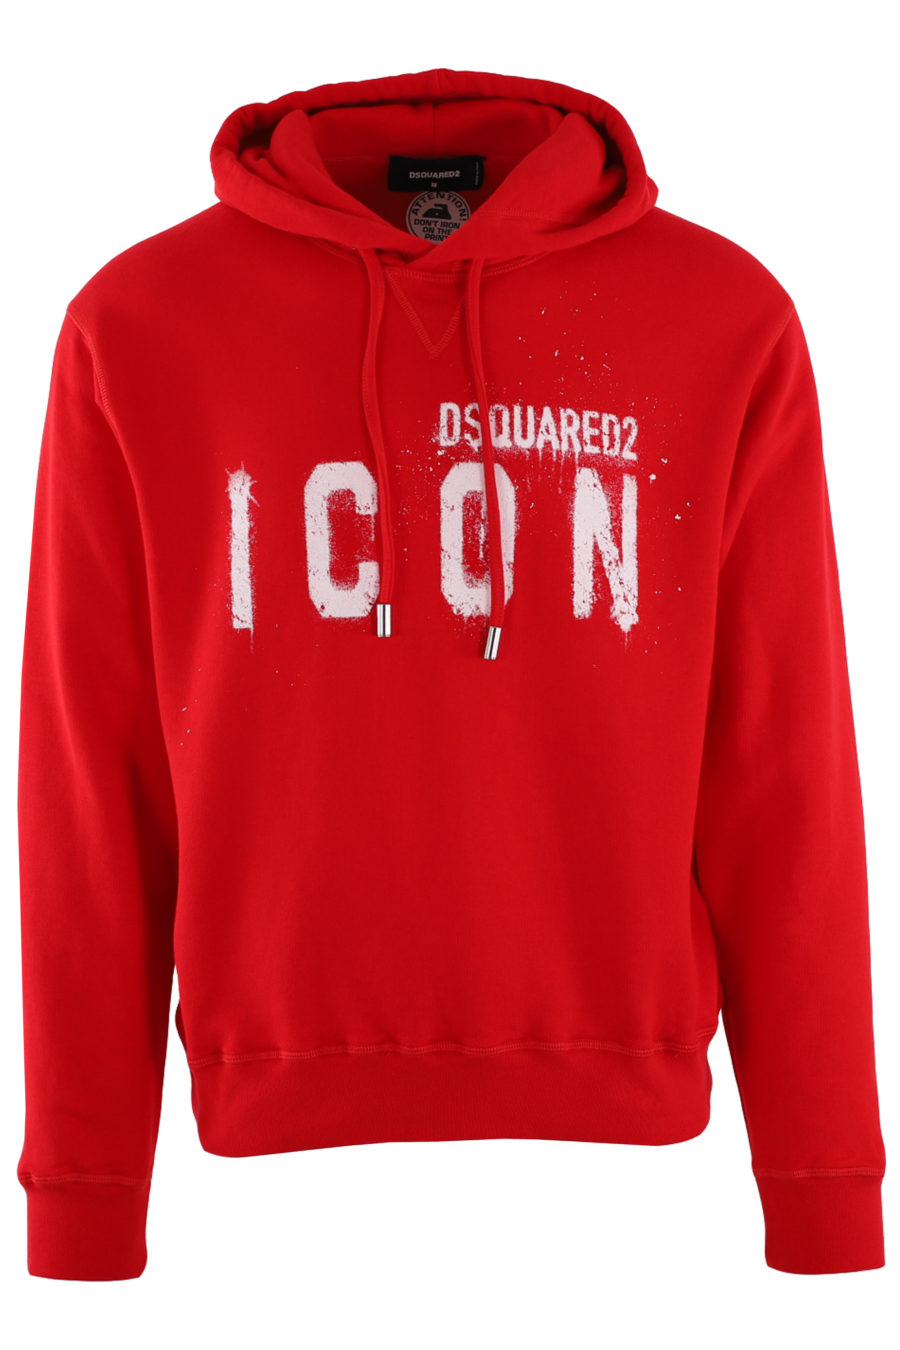 Sudadera roja con capucha y logo "Icon Spray" - IMG 8815